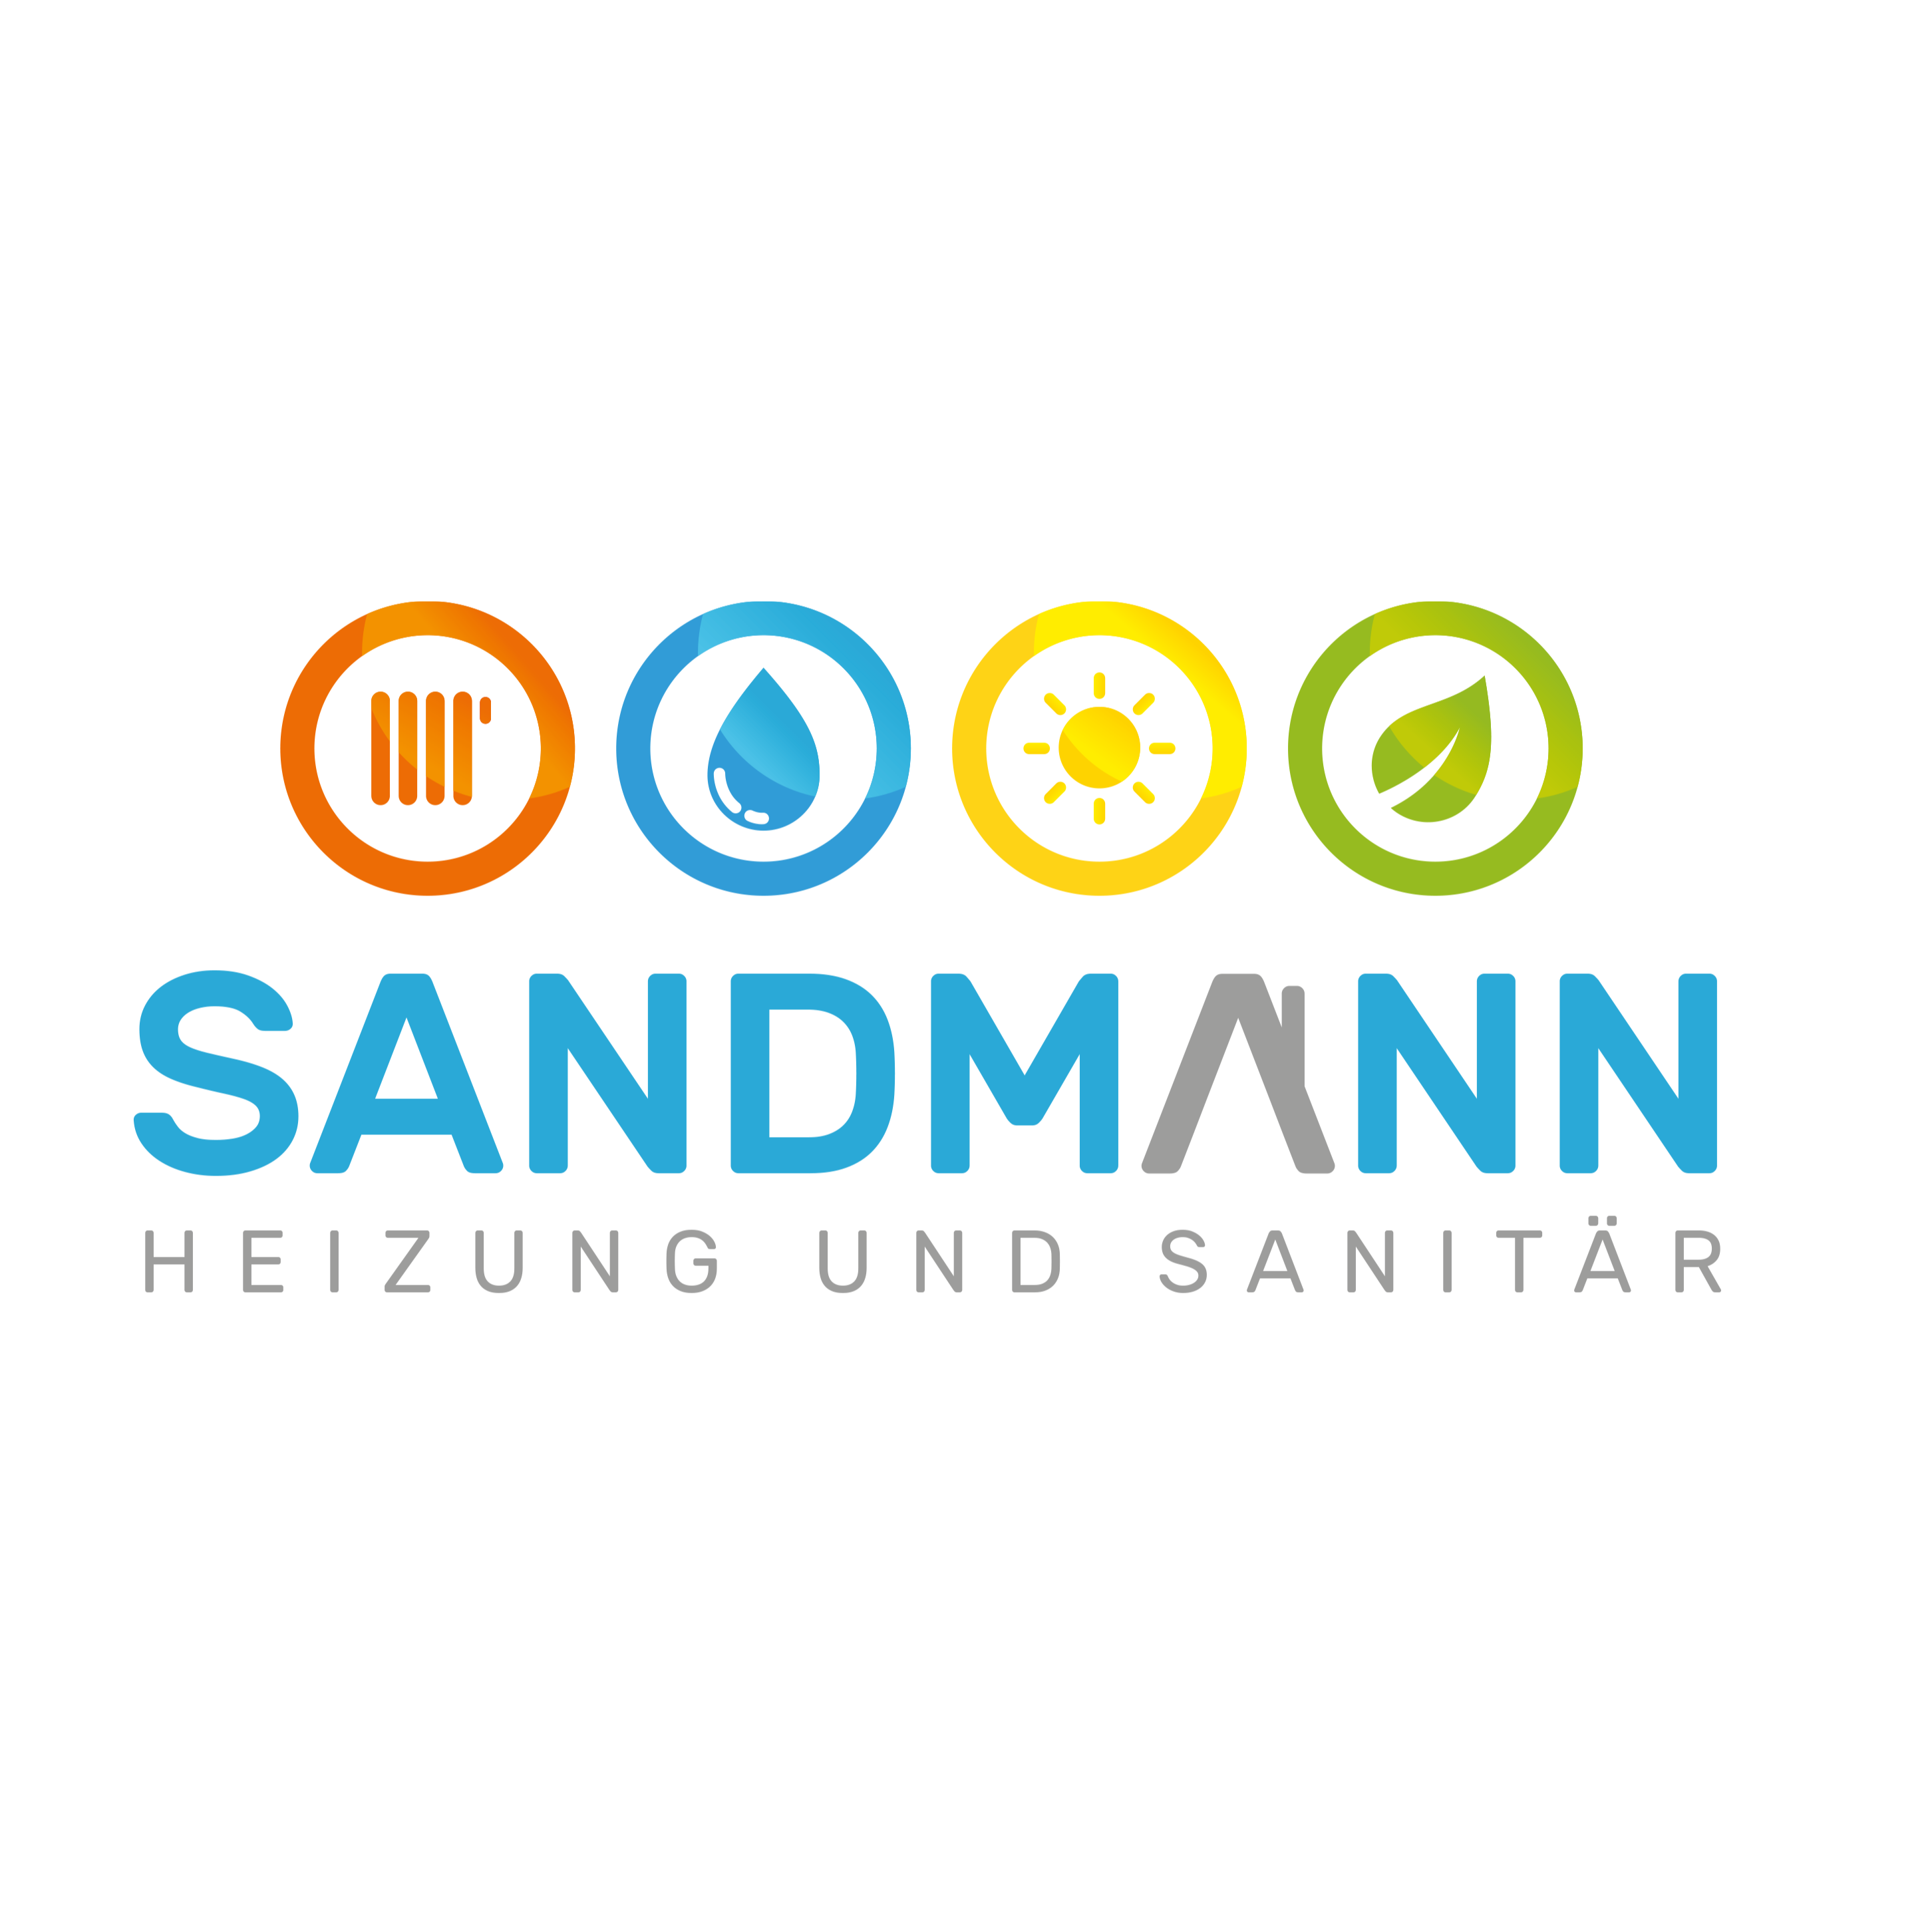 Sandmann Heizung und Sanitär Inh. Christian Sandmann in Neustadt an der Aisch - Logo